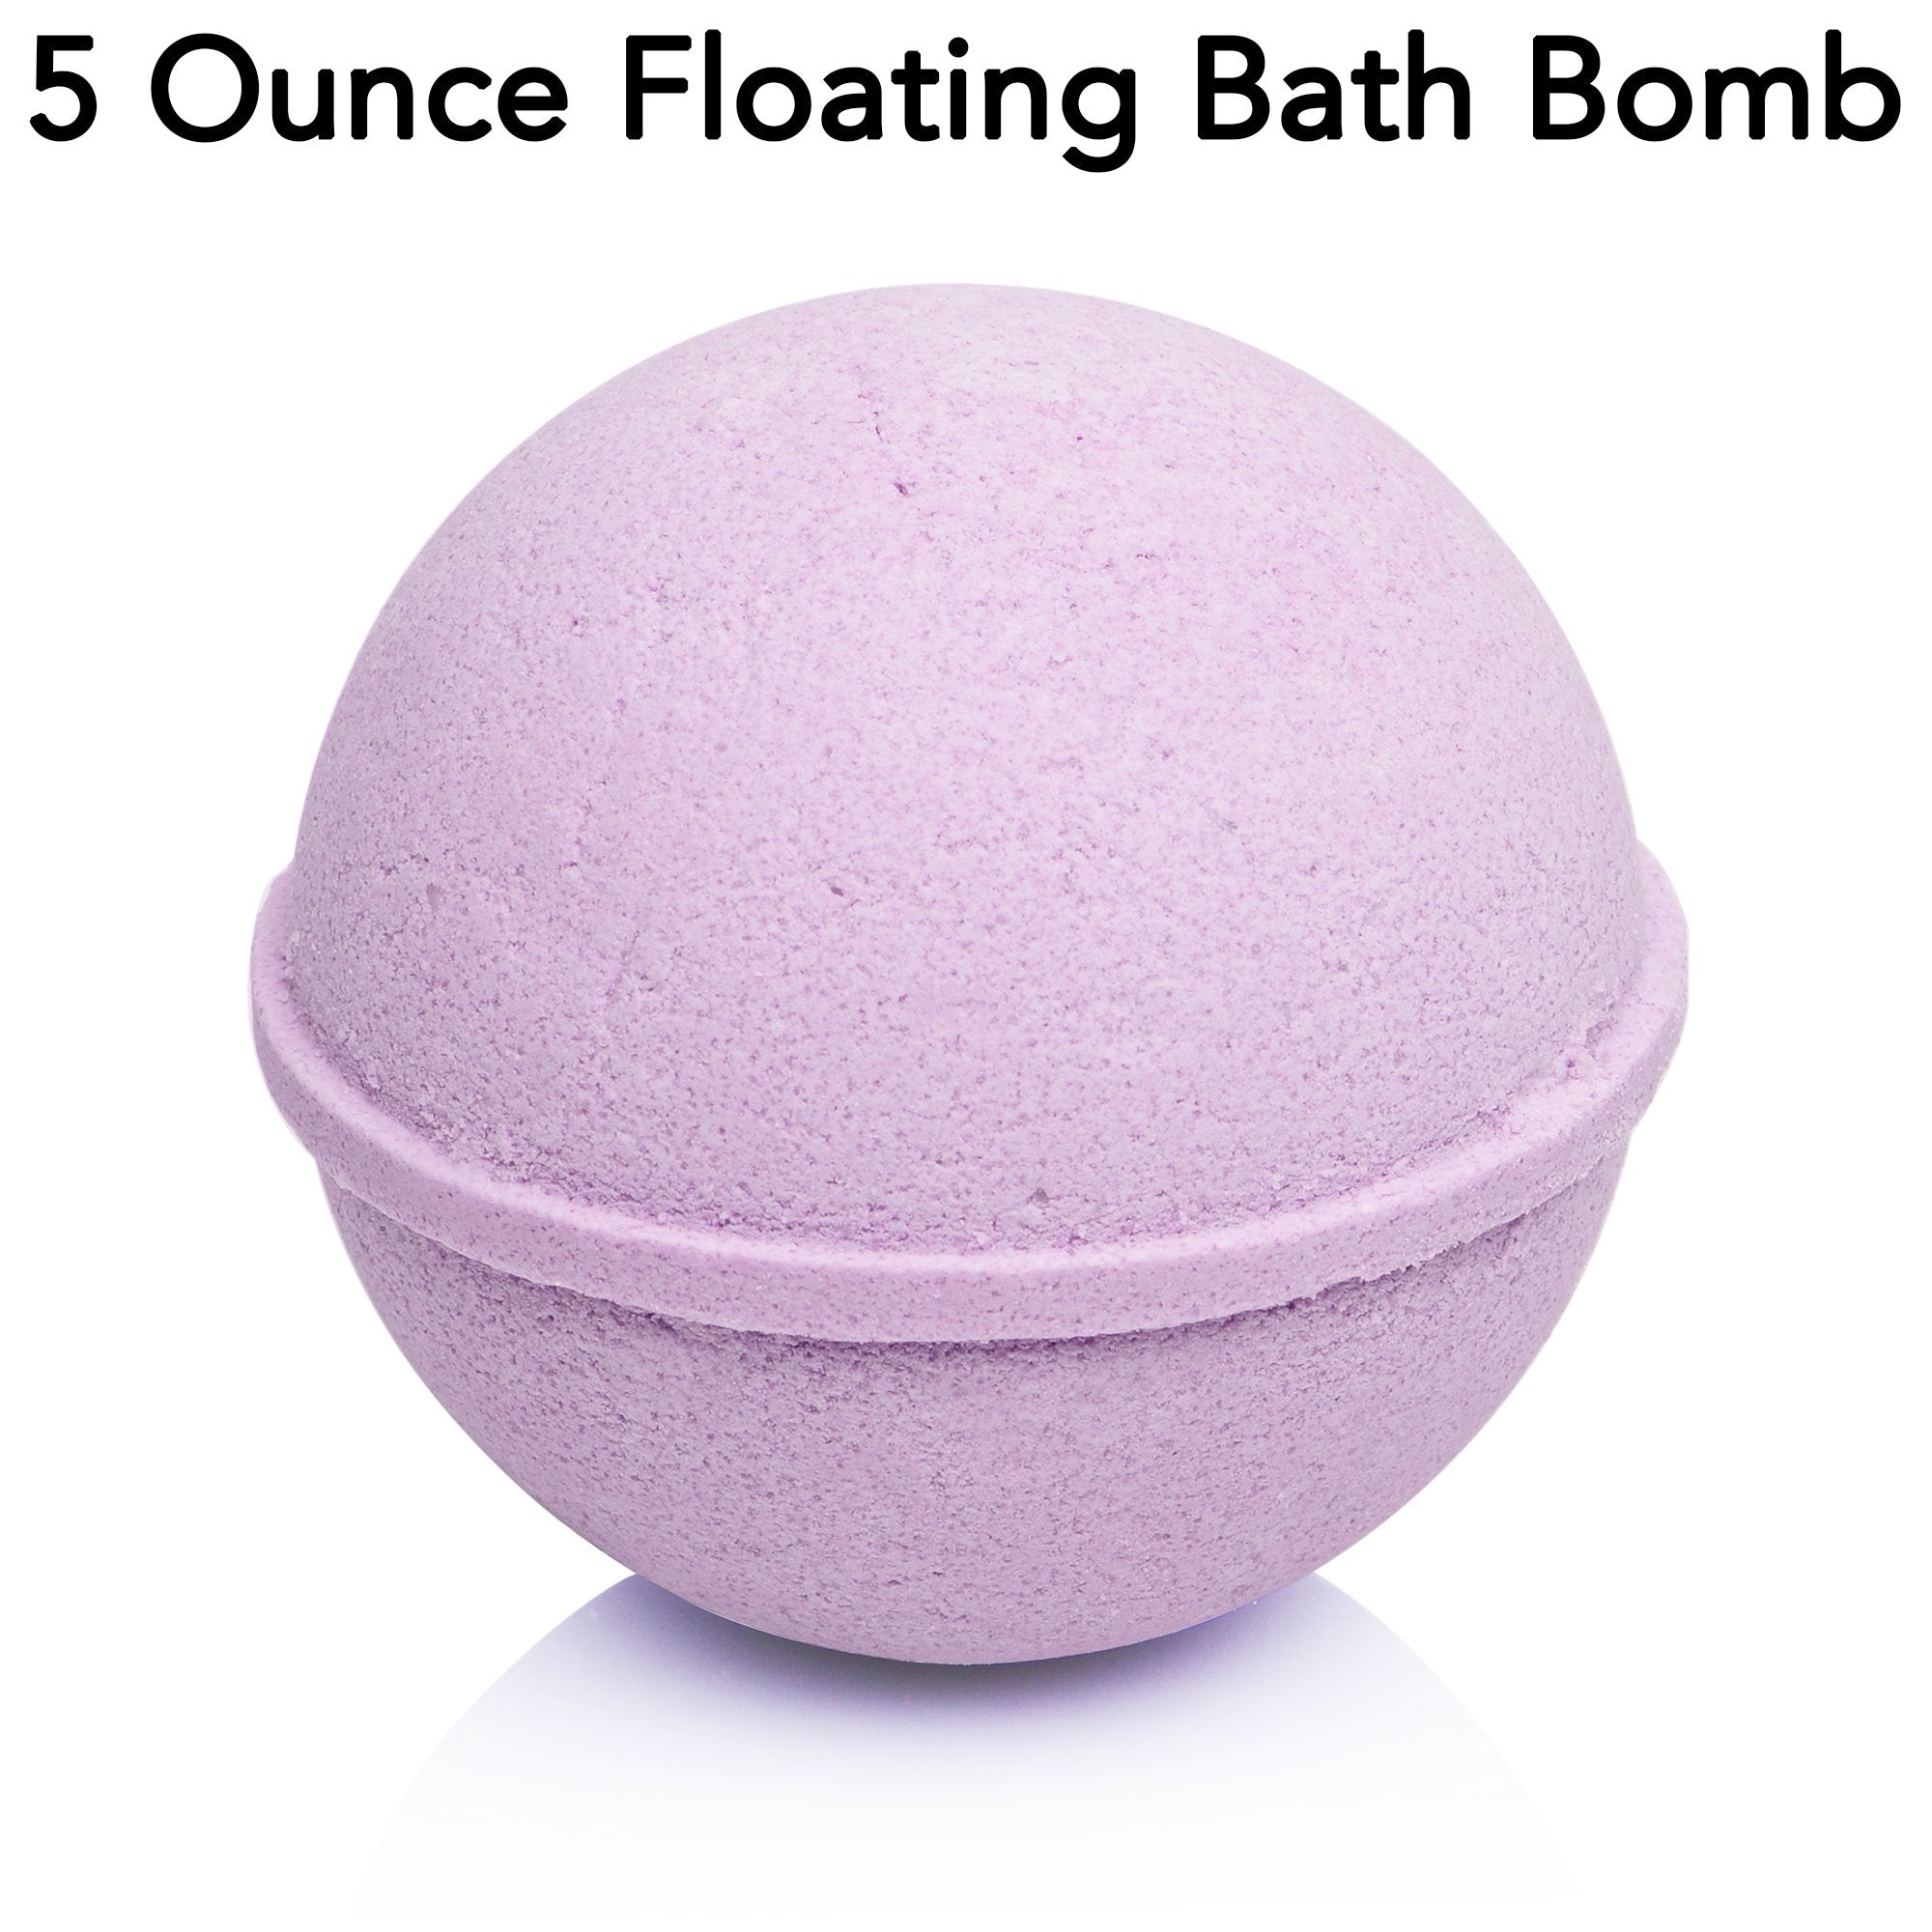 Lavender Bath Bomb 5 ounces